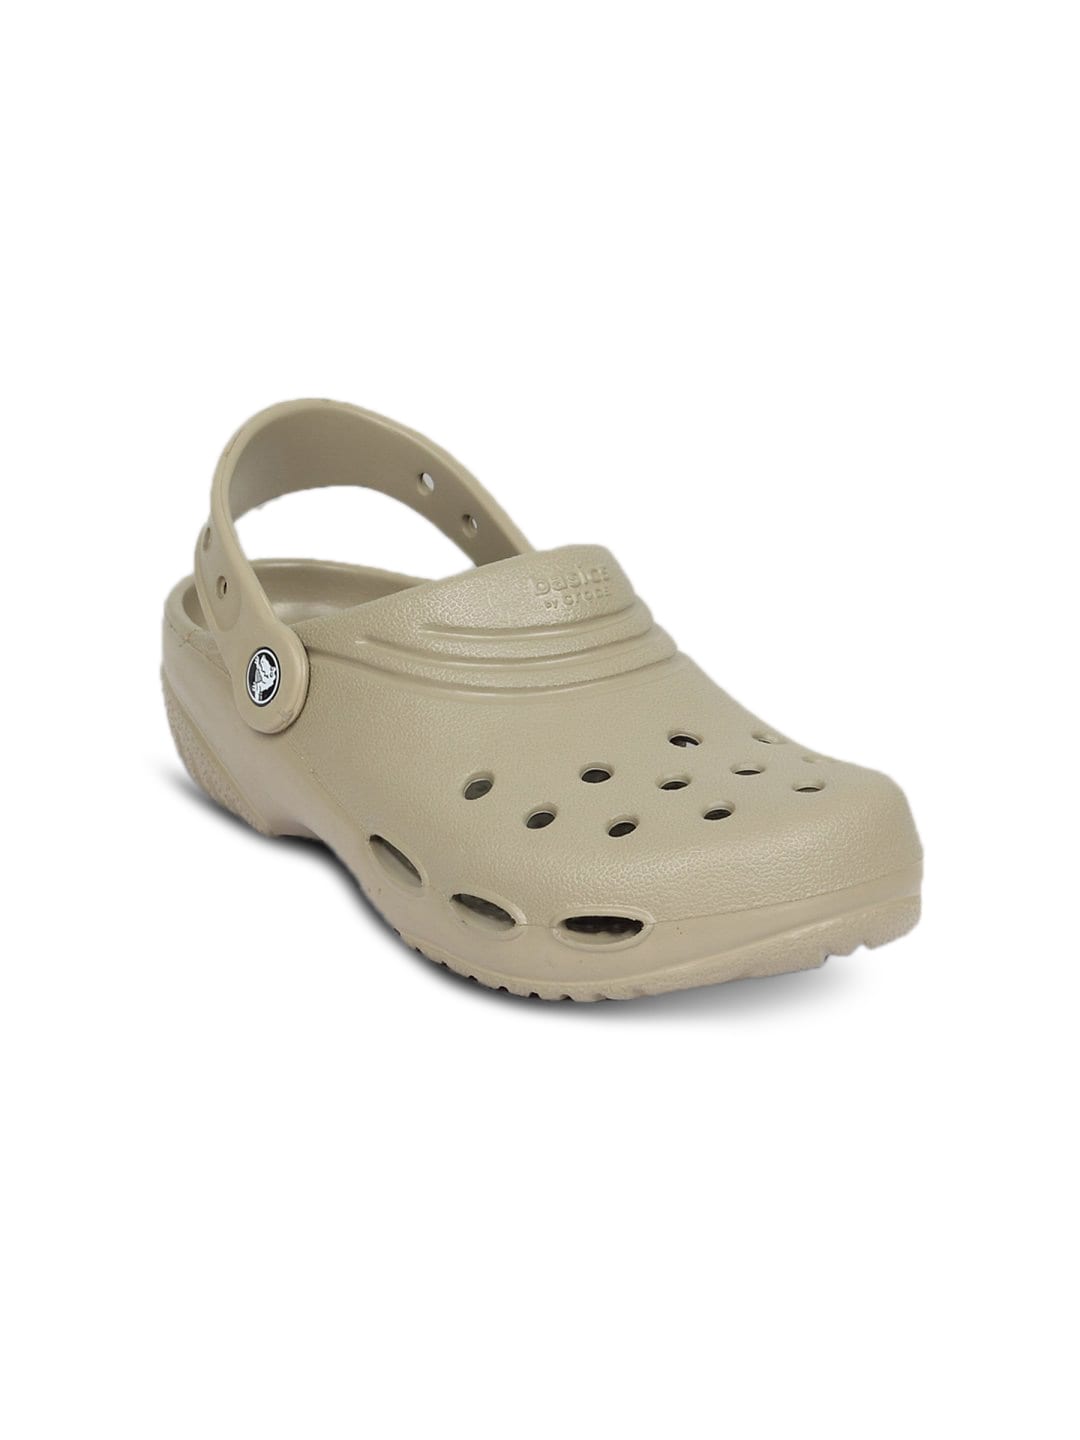 Crocs Kids Unisex Basic Clog Khaki Floater